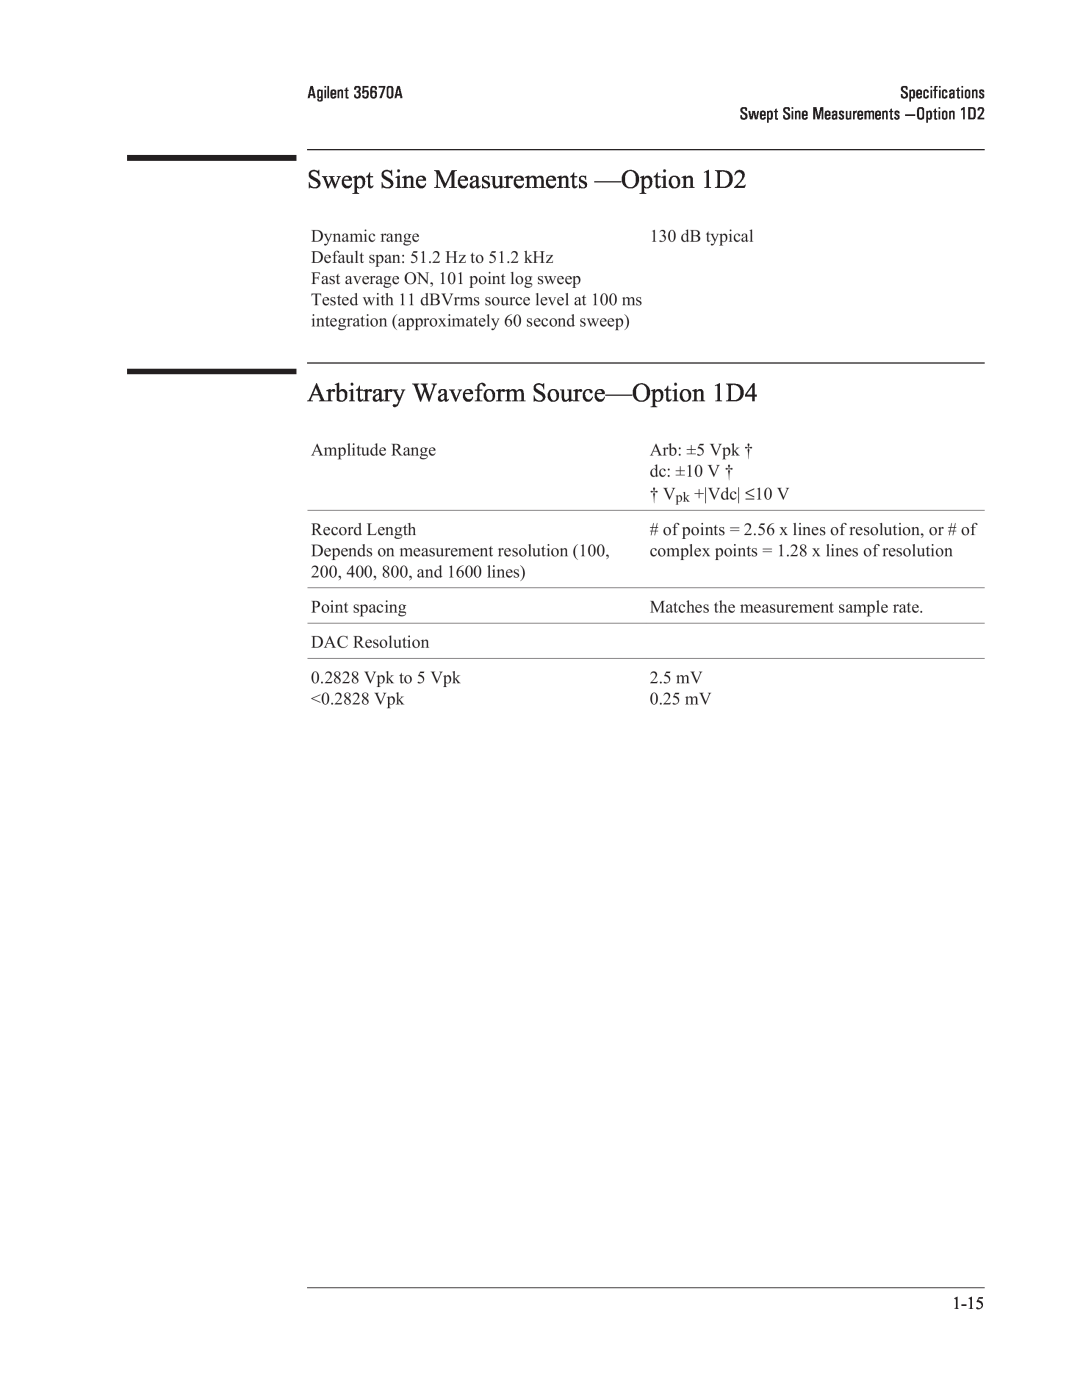 Agilent Technologies 35670-90066 manual Swept Sine Measurements —Option1D2, Arbitrary Waveform Source—Option1D4 